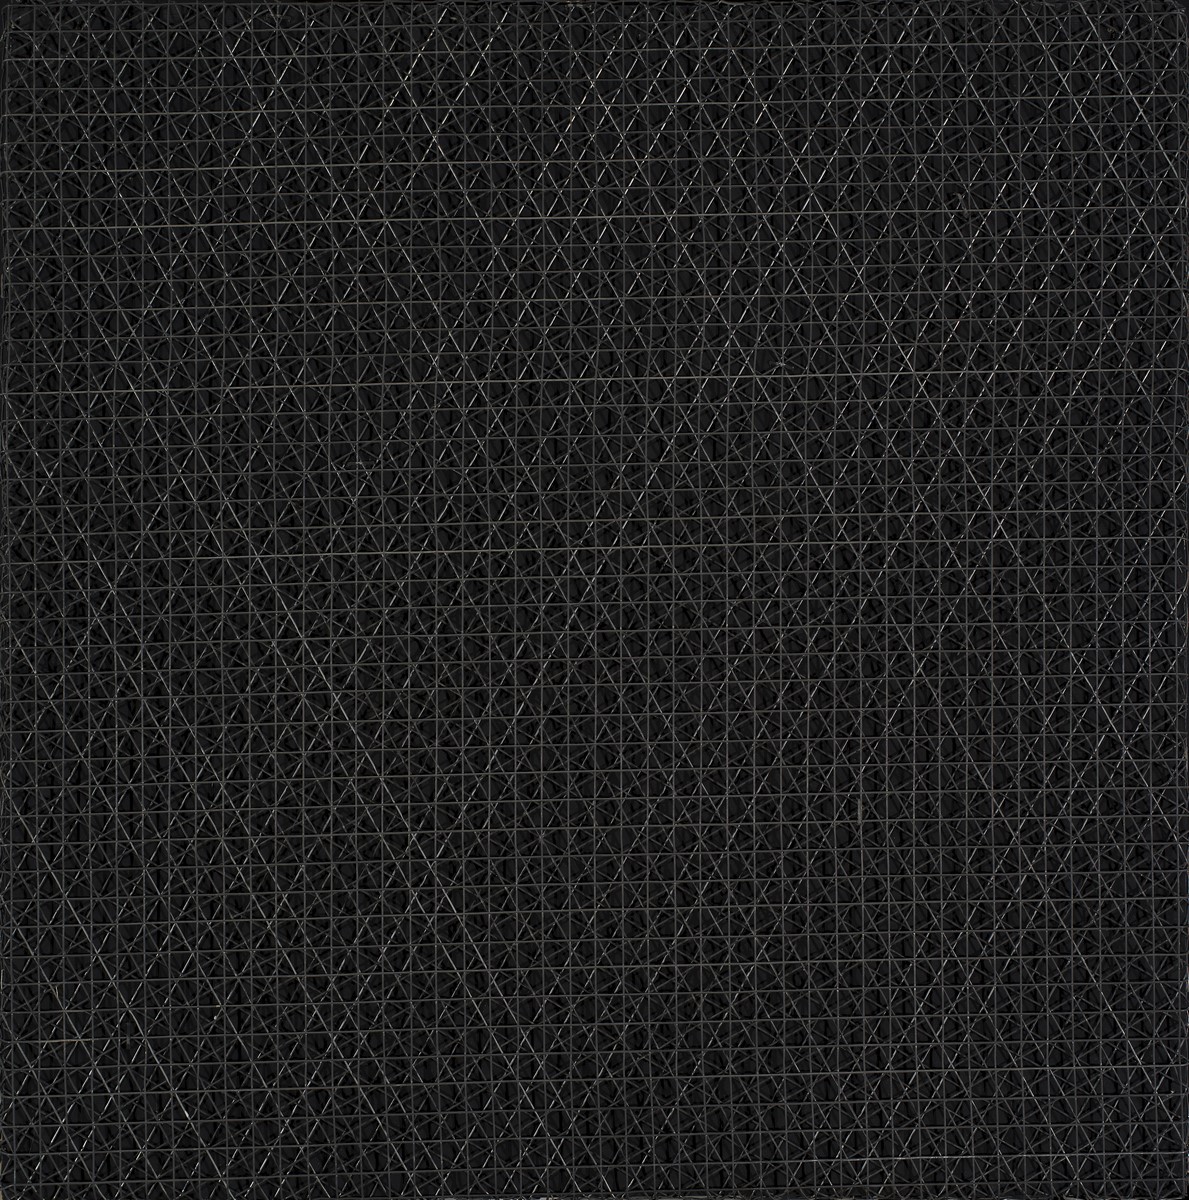 François Morellet, „3 siatki nałożone pod kątem 0, 30, 60 stopni”, 1972 (źródło: materiały prasowe organizatora)